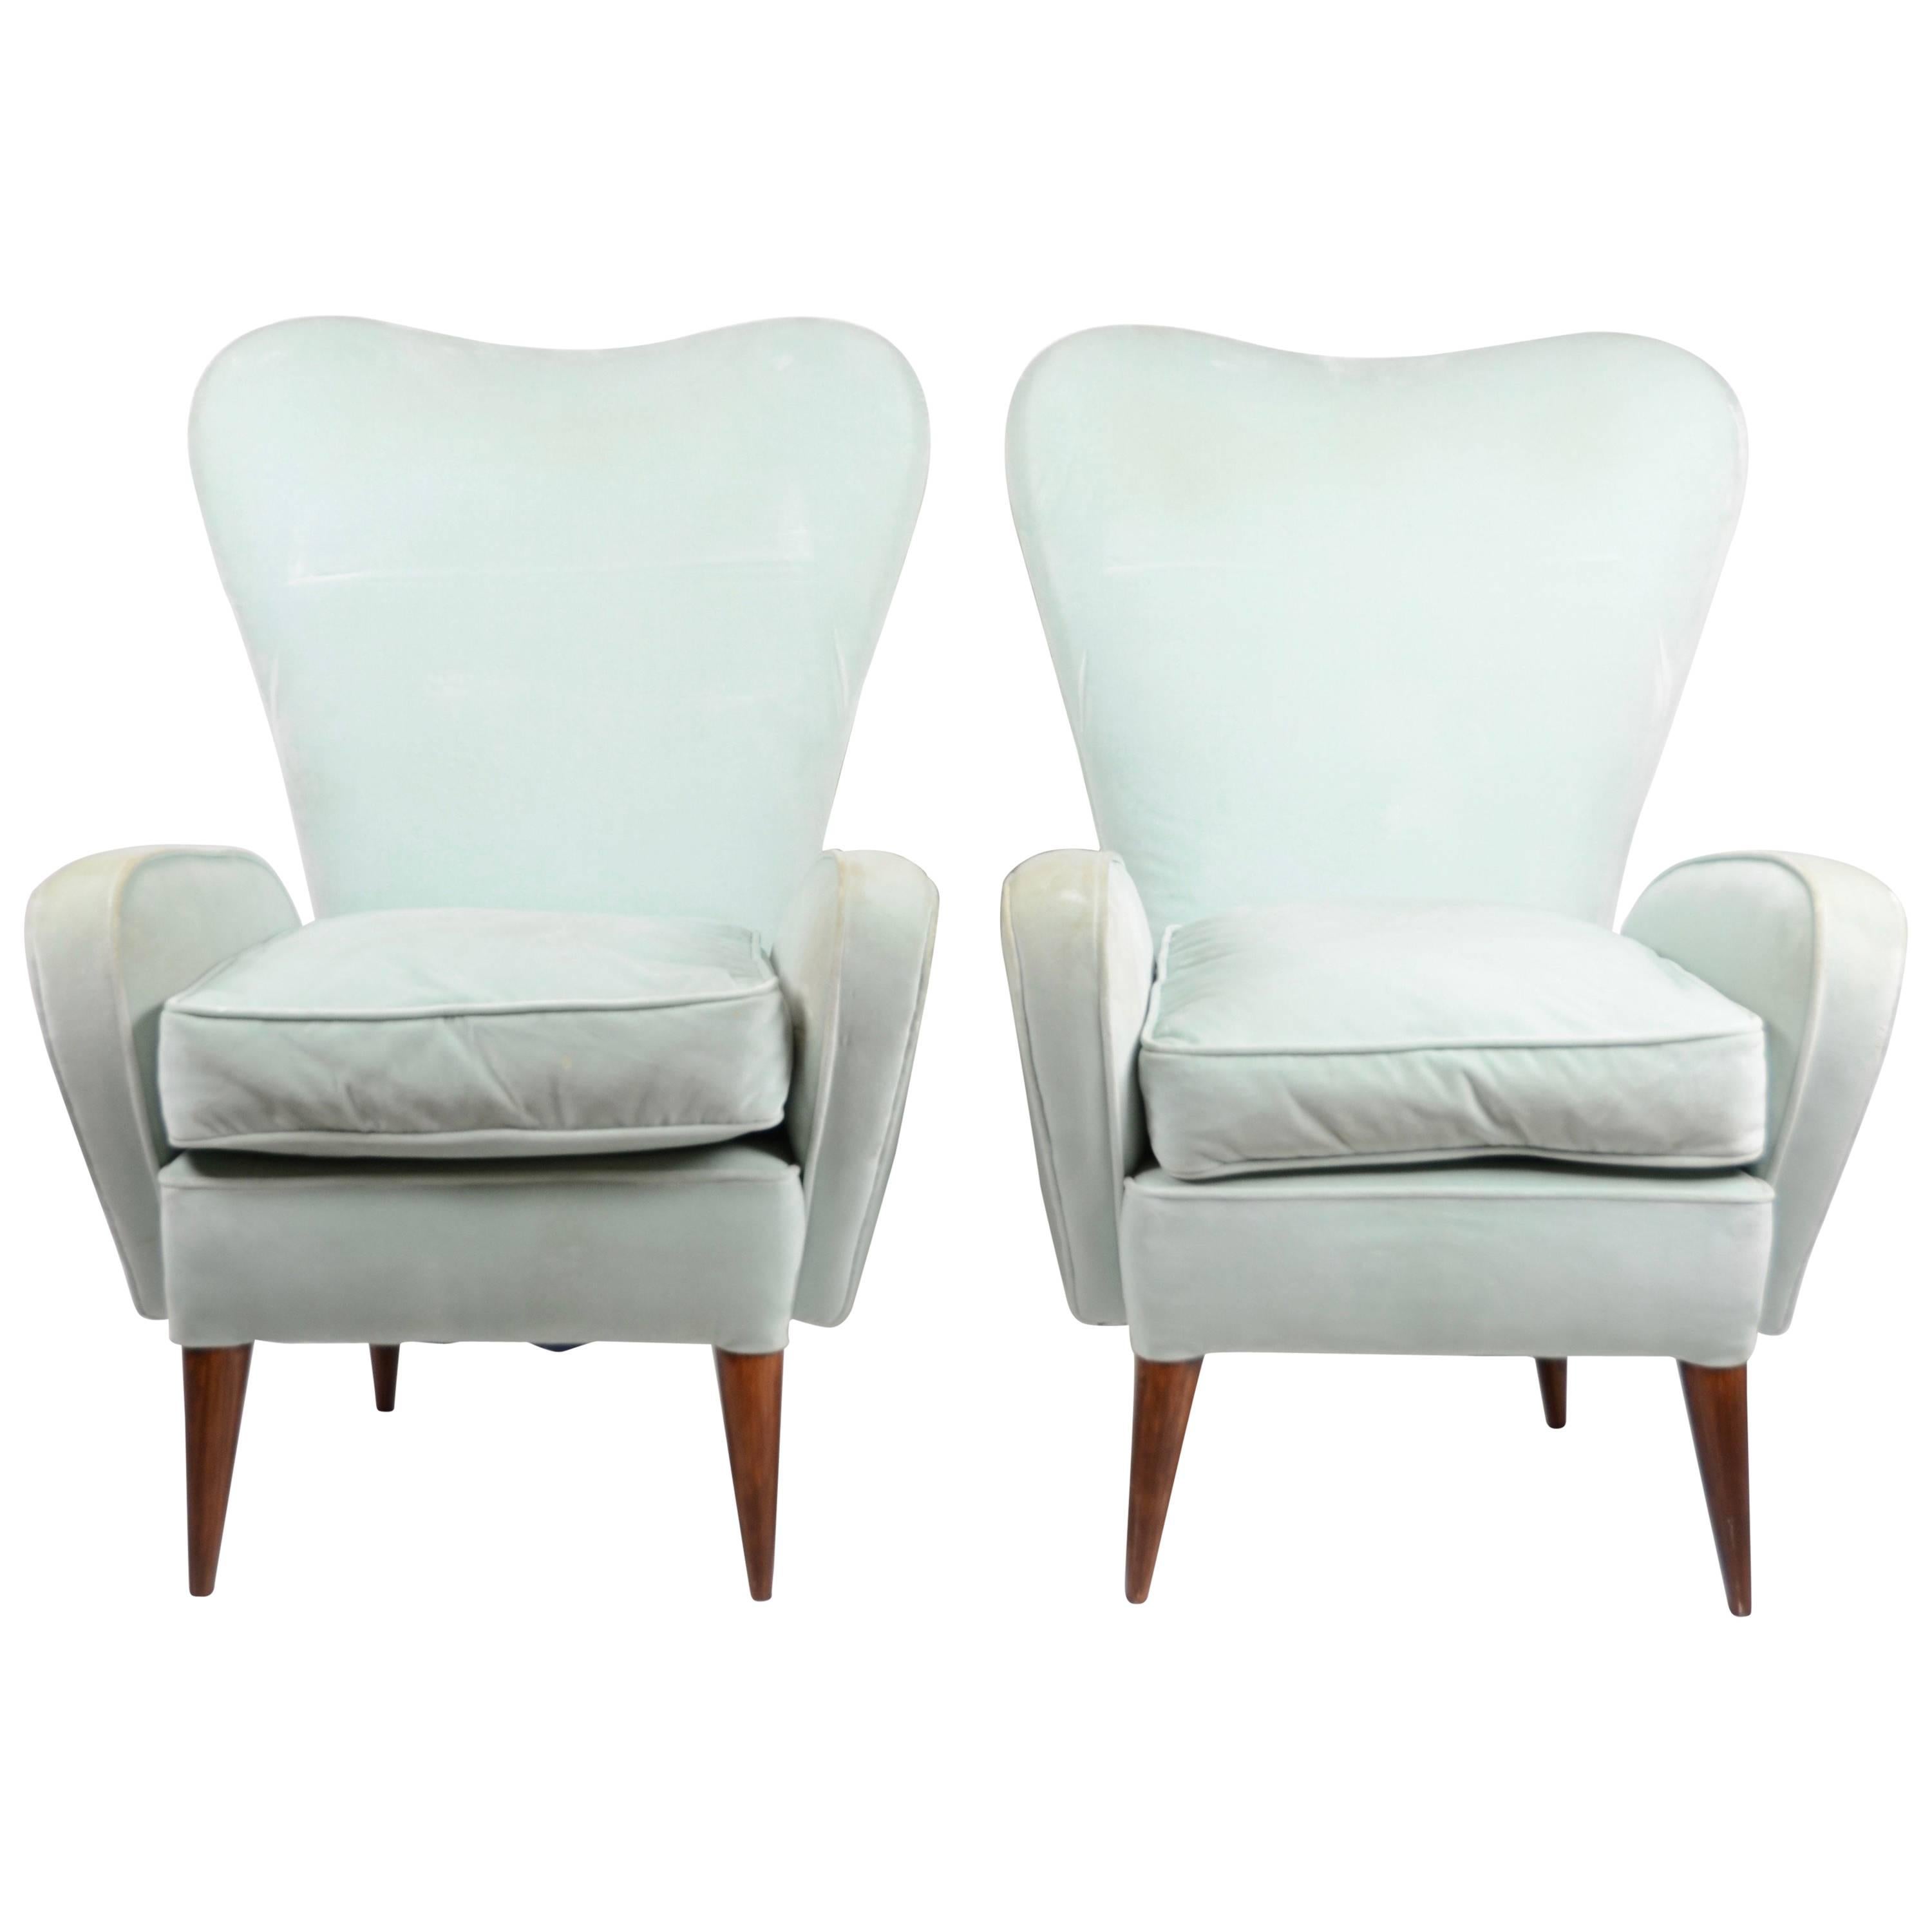 Lounge Chairs, Italian, 1950s-1960s